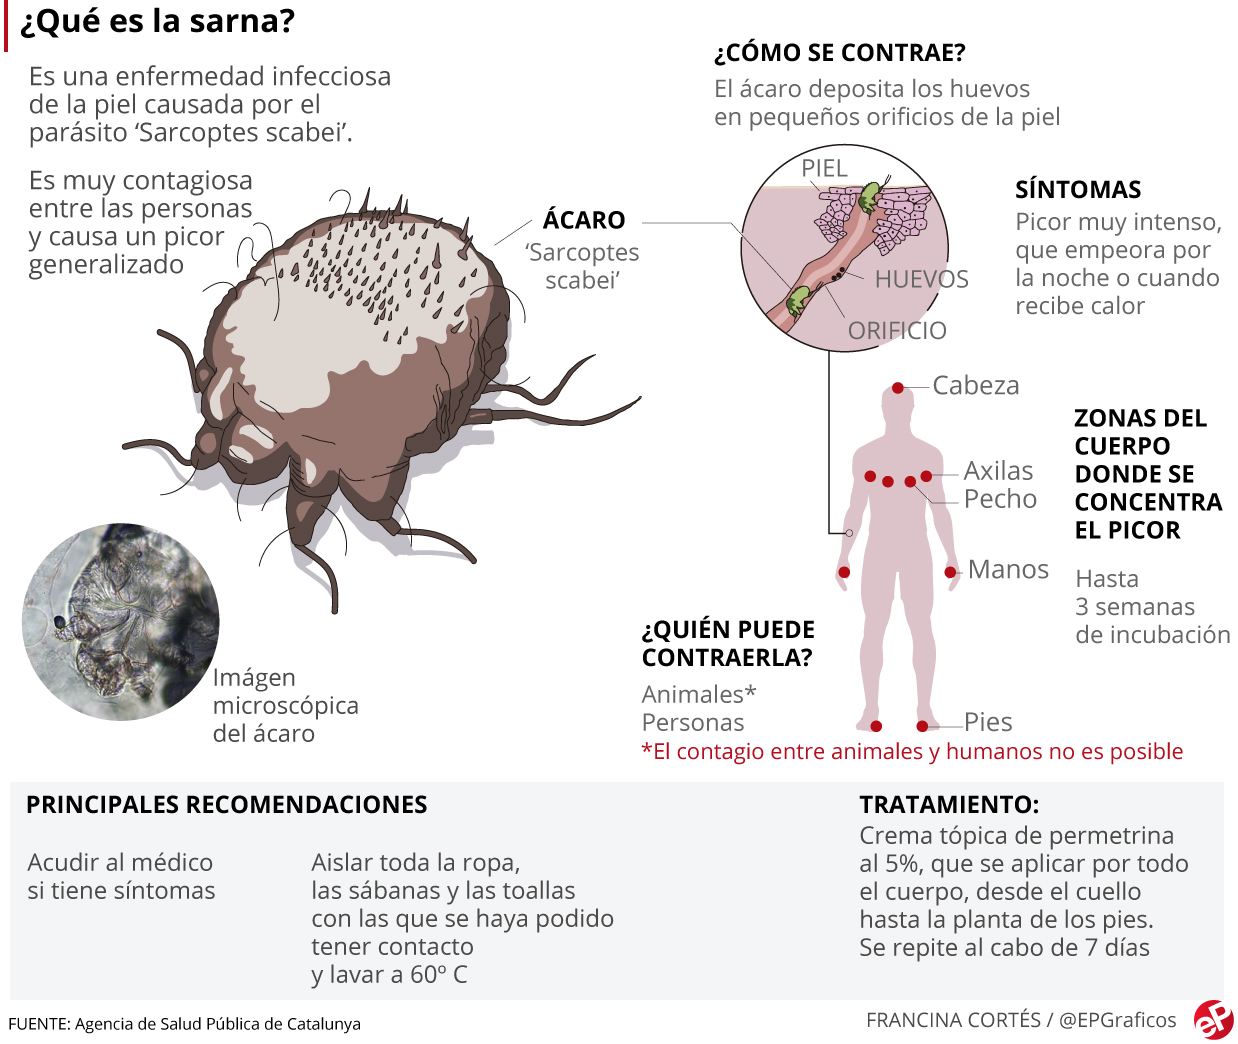 Gorka Orive on X: España detecta una explosión de casos de sarna  relacionada con la pandemia. El aumento de contagios por el confinamiento,  el retraso en el diagnóstico por la saturación y